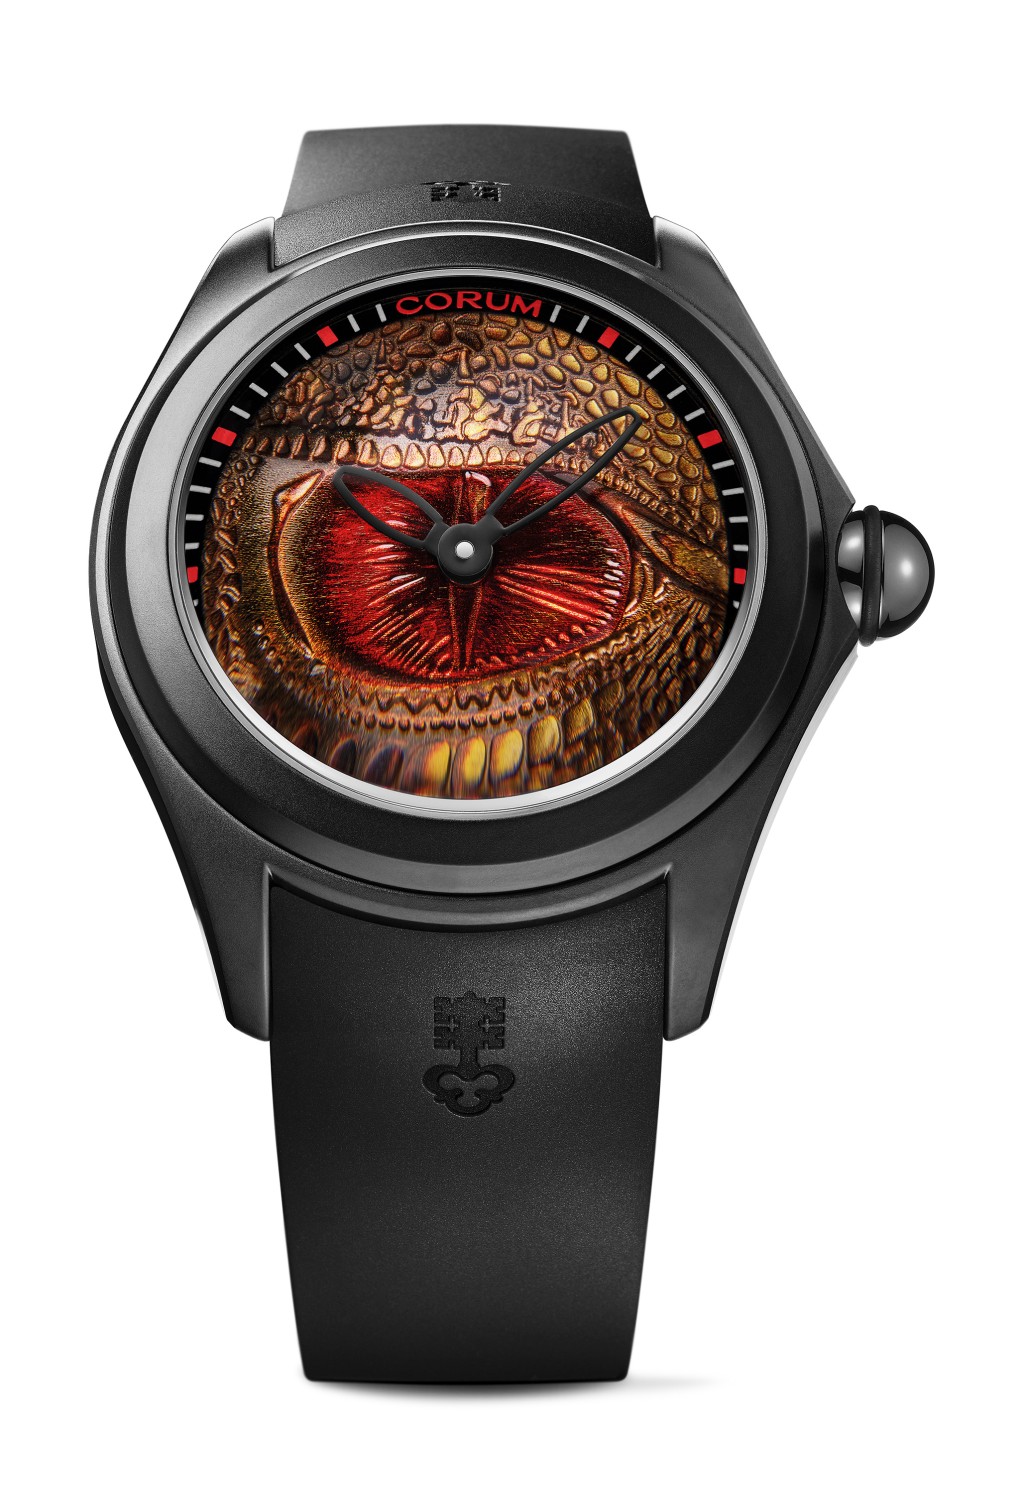 Dragon Eye的设计则极为大胆，表盘运用特殊金属铸造技术，配合人手彩绘制作龙的眼睛。